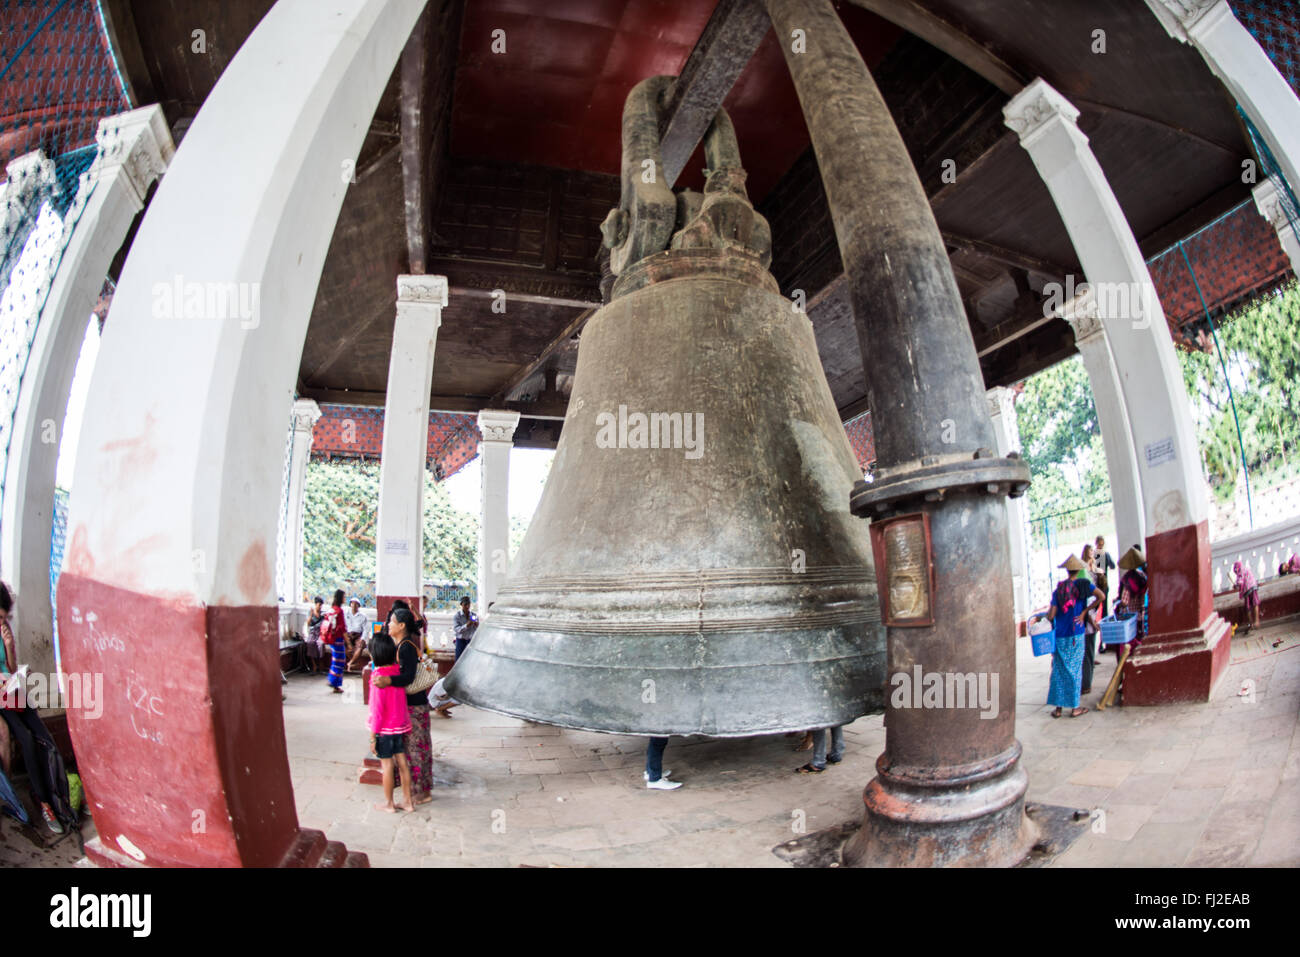 MINGUN, Myanmar - pesant environ 90 tonnes et réputée pour être la plus grande cloche non fissuré dans le monde (un plus gros à Moscou est fissuré), la cloche de Mingun a été coulé en 1808 par le roi Bodawpaya pour la pagode de Mingun, qui n'a jamais été terminée. Le diamètre de sa base est de 16 pieds 3 pouces, et il est à 12 pieds de haut. Banque D'Images